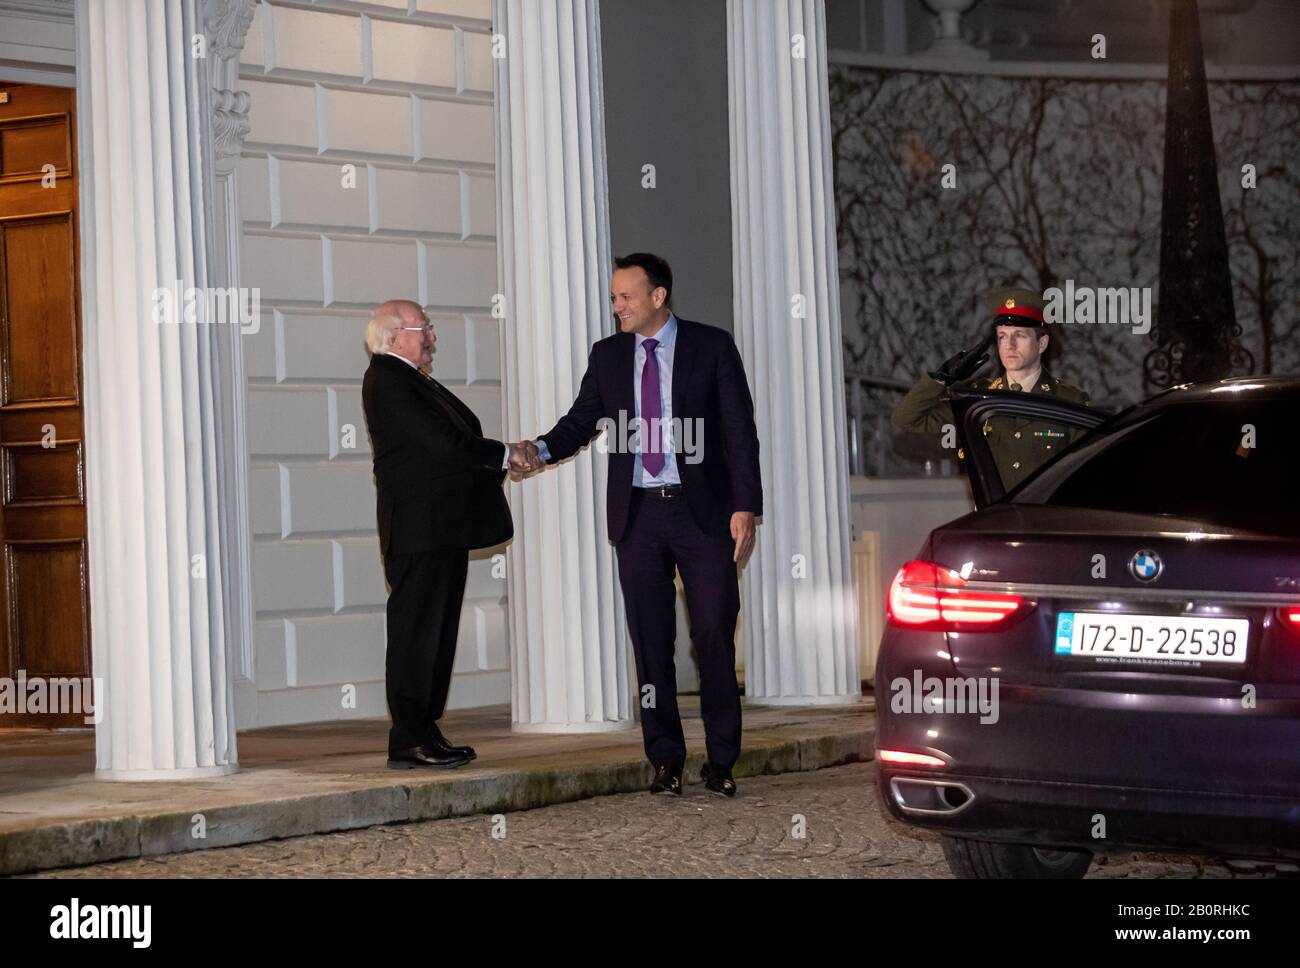 Dublín. 21 de febrero de 2020. El primer ministro irlandés Leo Varadkar (C)  abandona la residencia oficial del presidente irlandés después de presentar  su renuncia al presidente irlandés Michael D. Higgins (L)